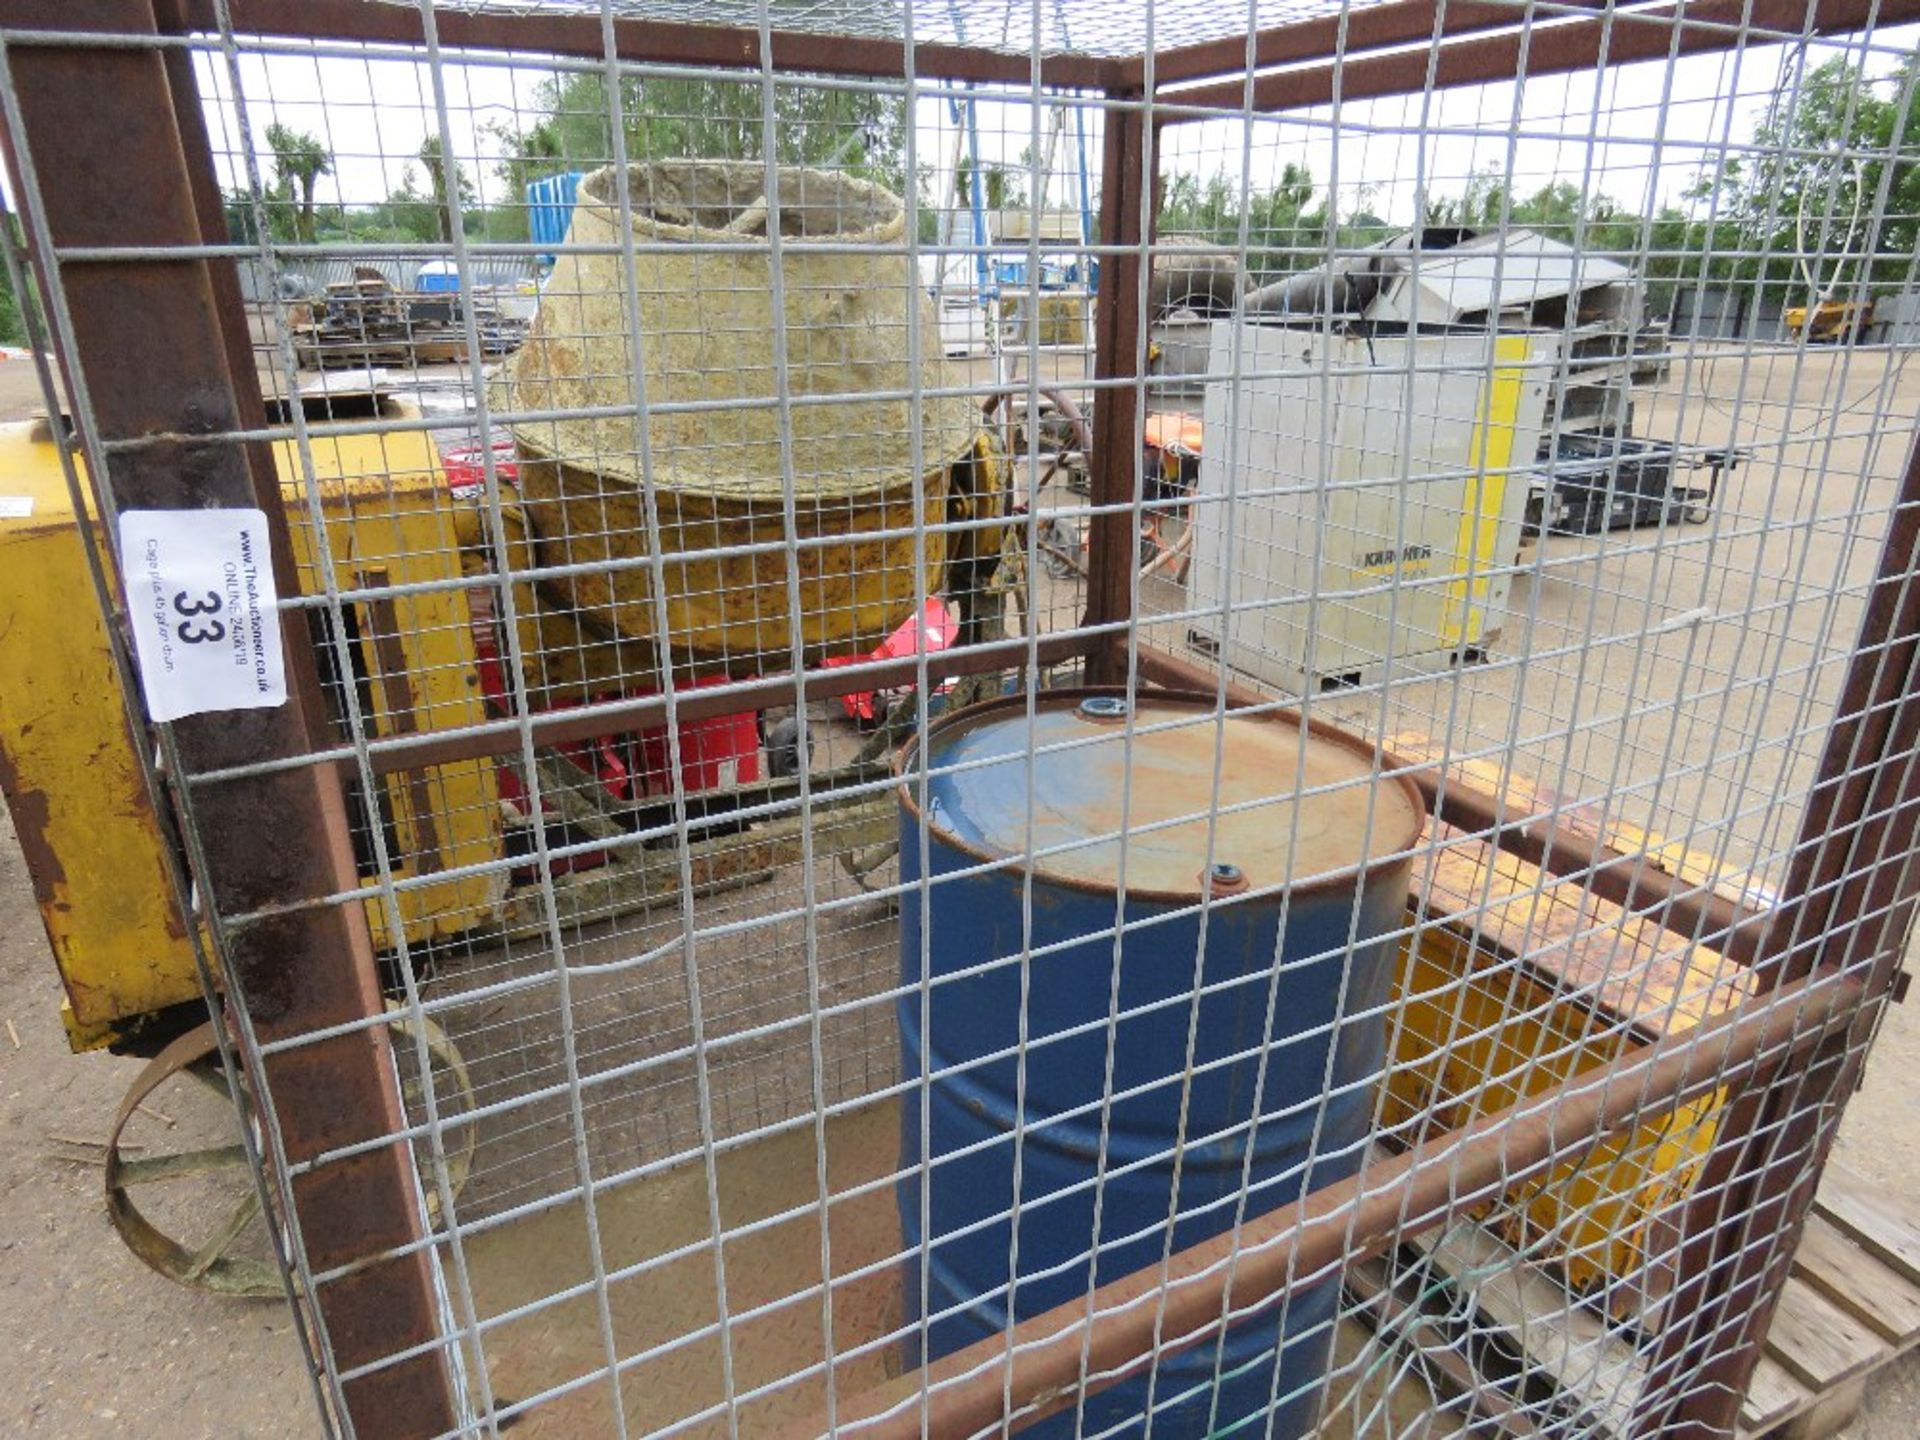 Cage plus 45 gallon drum - Image 2 of 2